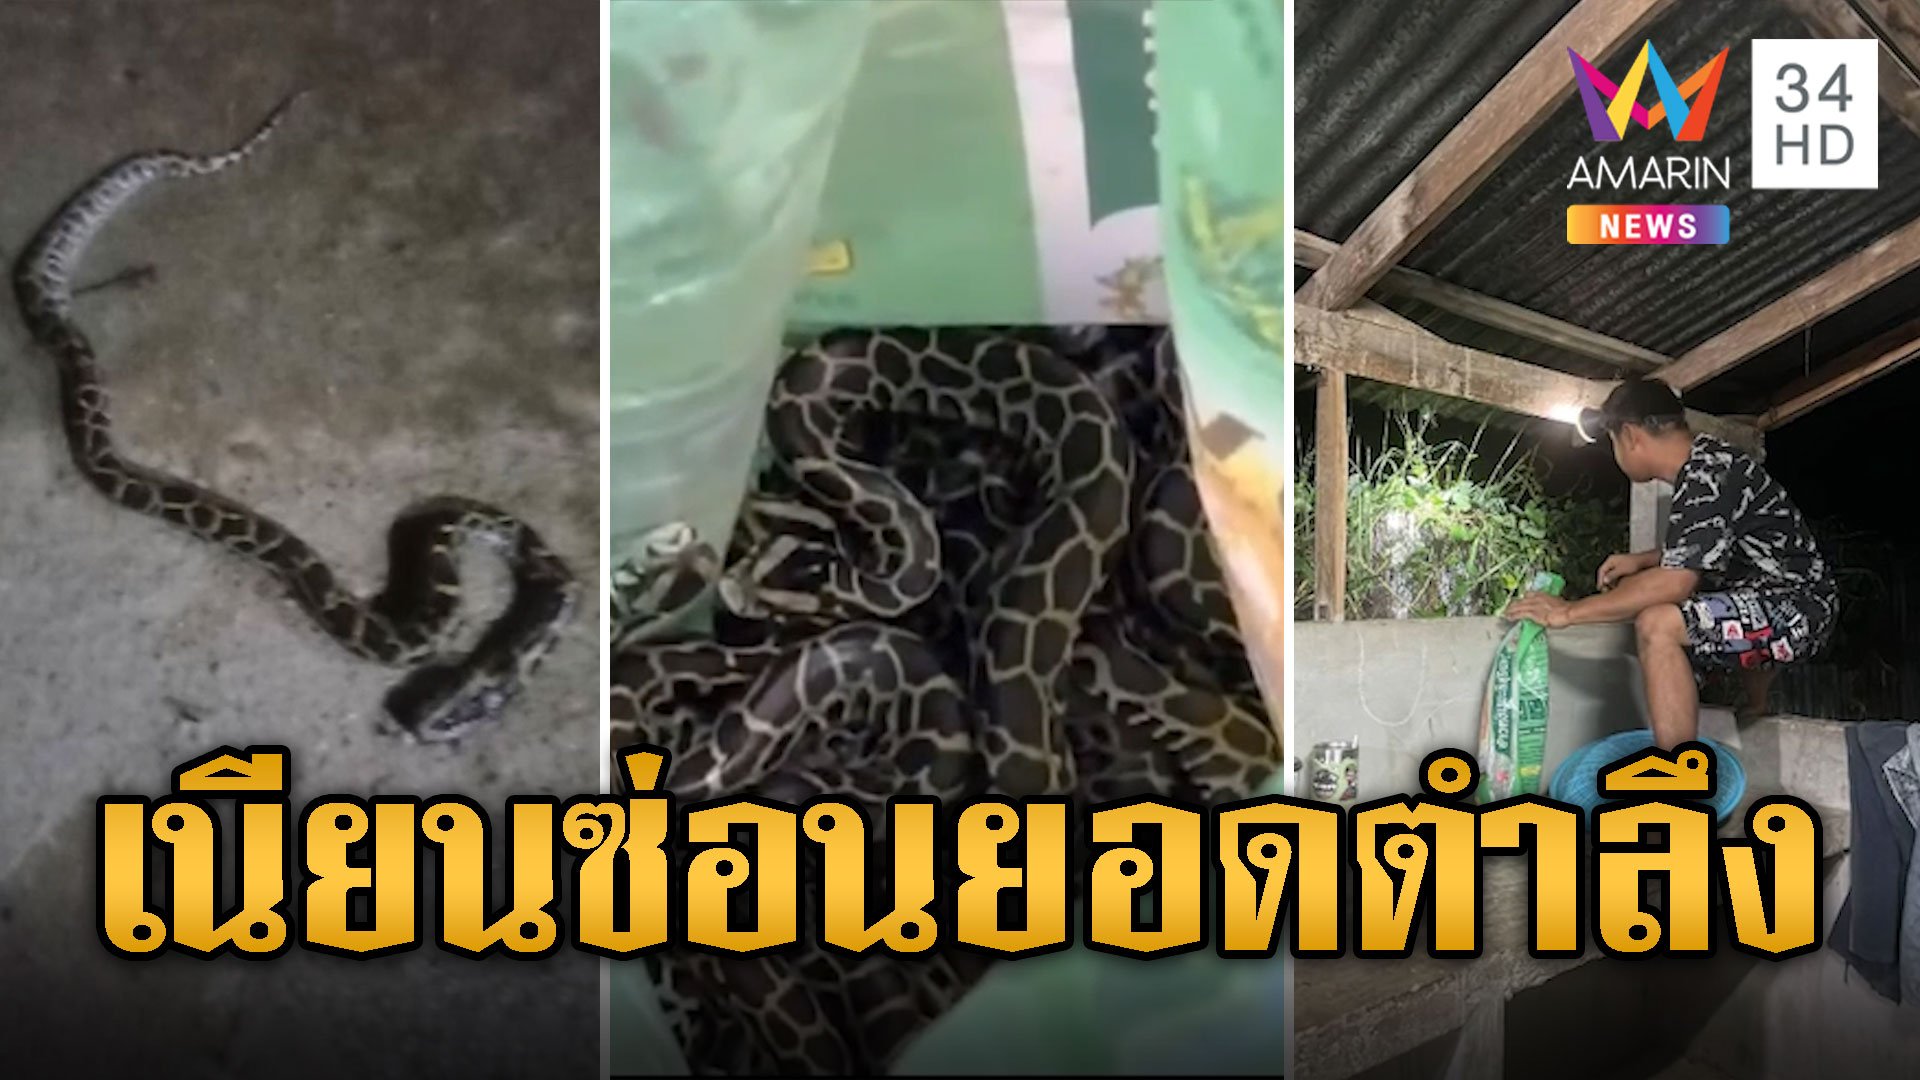 ขนหัวลุก! ลูกงูหลาม 13 ตัวบุกบ้าน ซ่อนตรงยอดตำลึง | ข่าวอรุณอมรินทร์ | 13 มิ.ย. 67 | AMARIN TVHD34